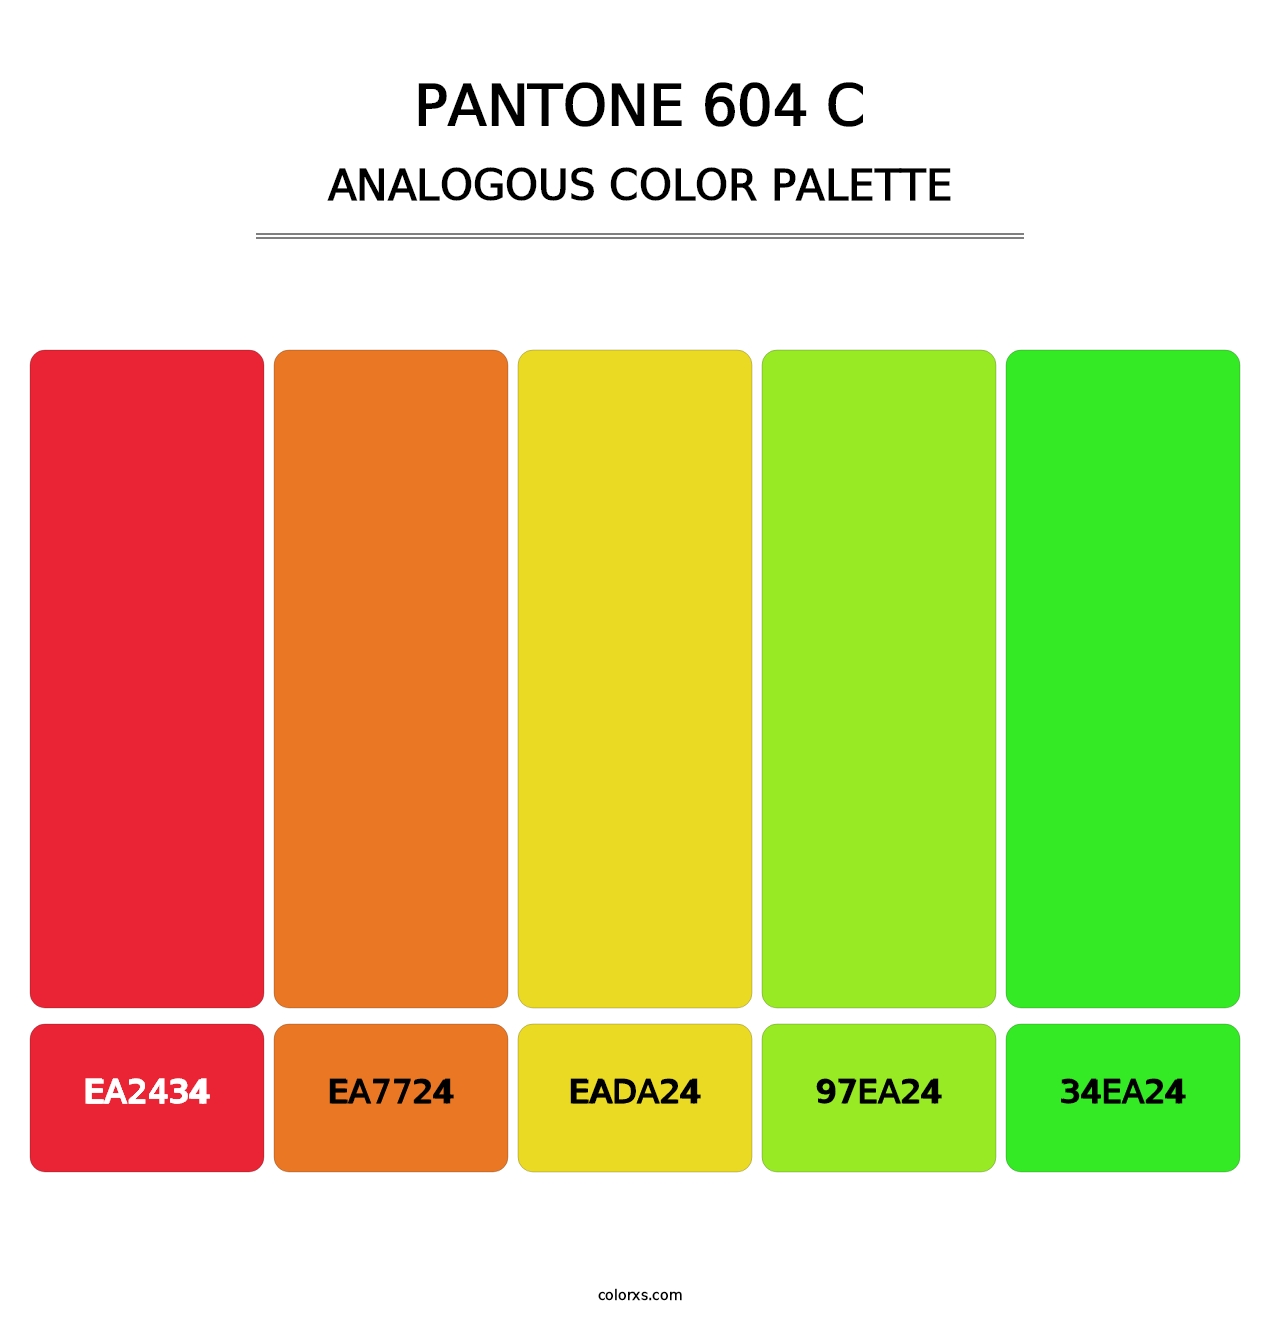 PANTONE 604 C - Analogous Color Palette